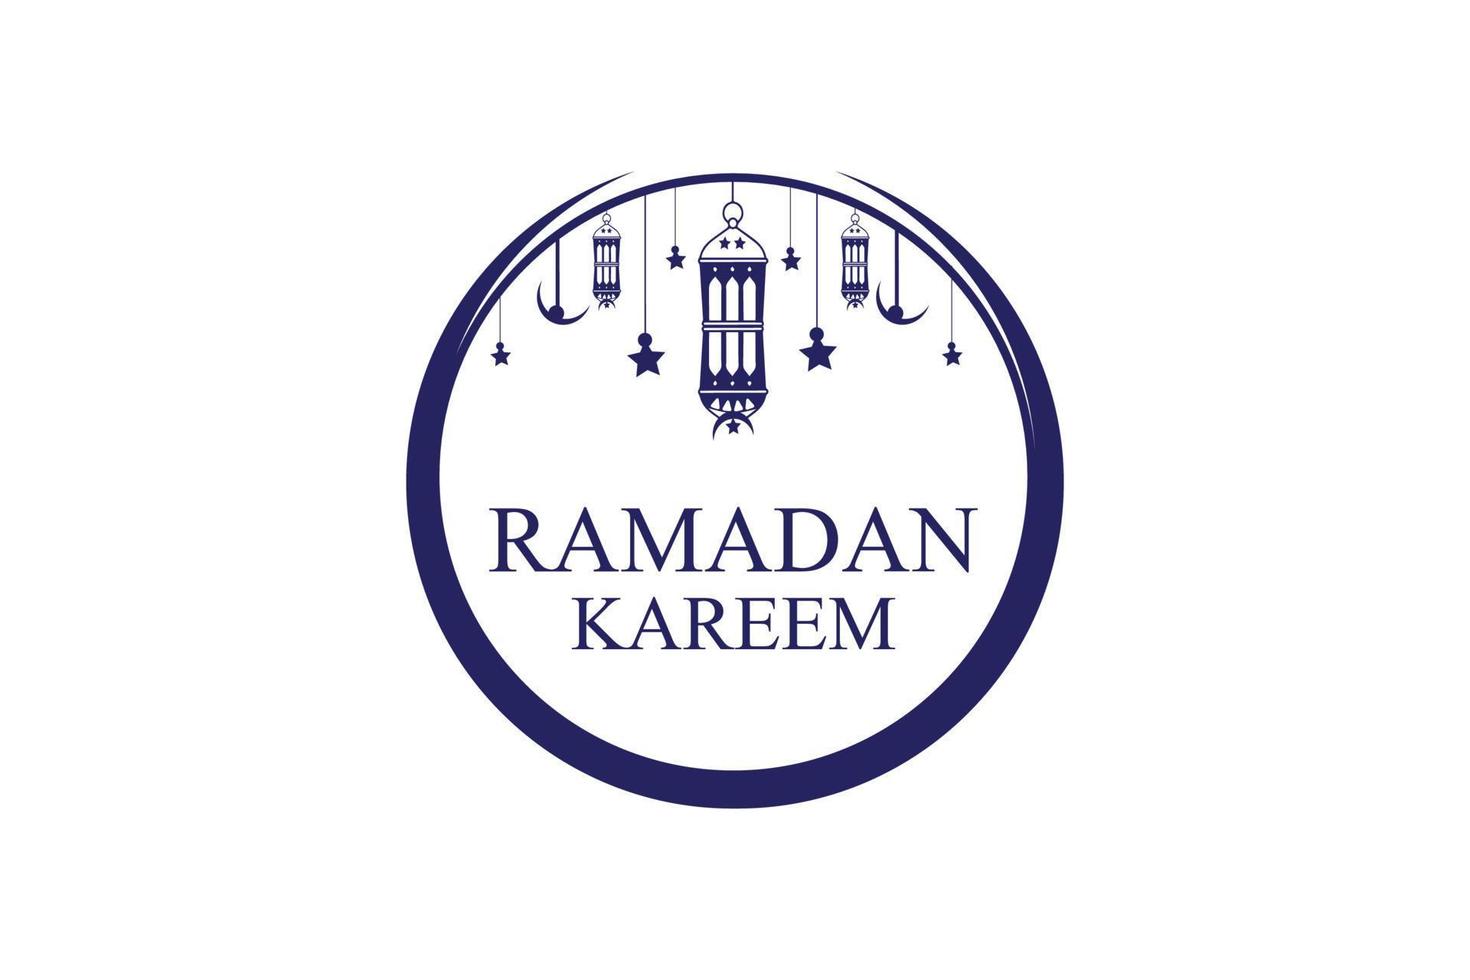 Ramadan Kareem design. Ramadan logo. Arabian logo template. Islamic logo design. Eid mubarak vector